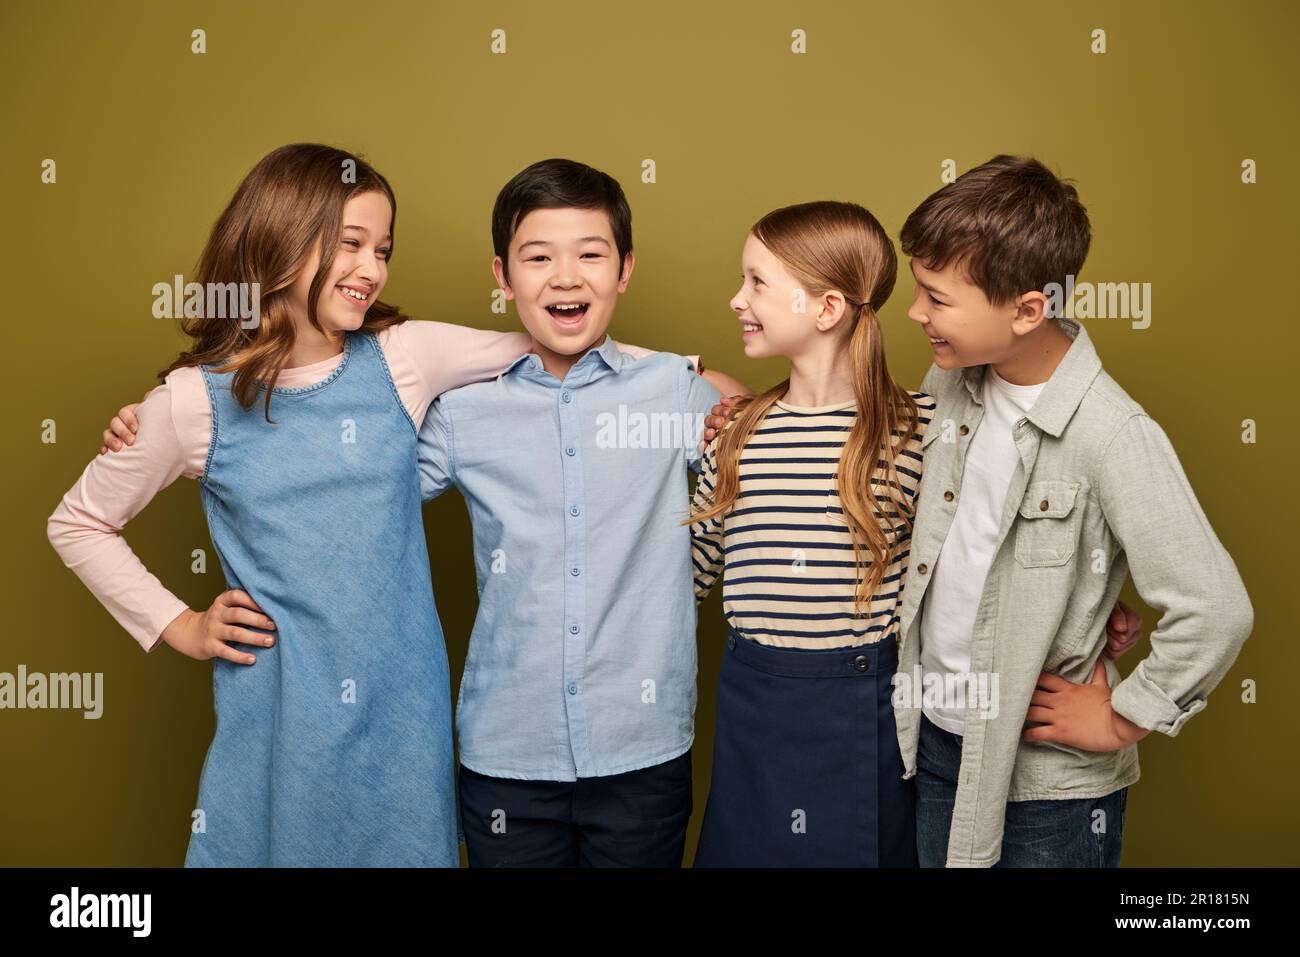 Fröhliche Kinder in lässiger Kleidung, die sich umarmen und asiatischen Freund mit offenem Mund anschauen, während sie den internationalen Kinderschutztag feiern Stockfoto